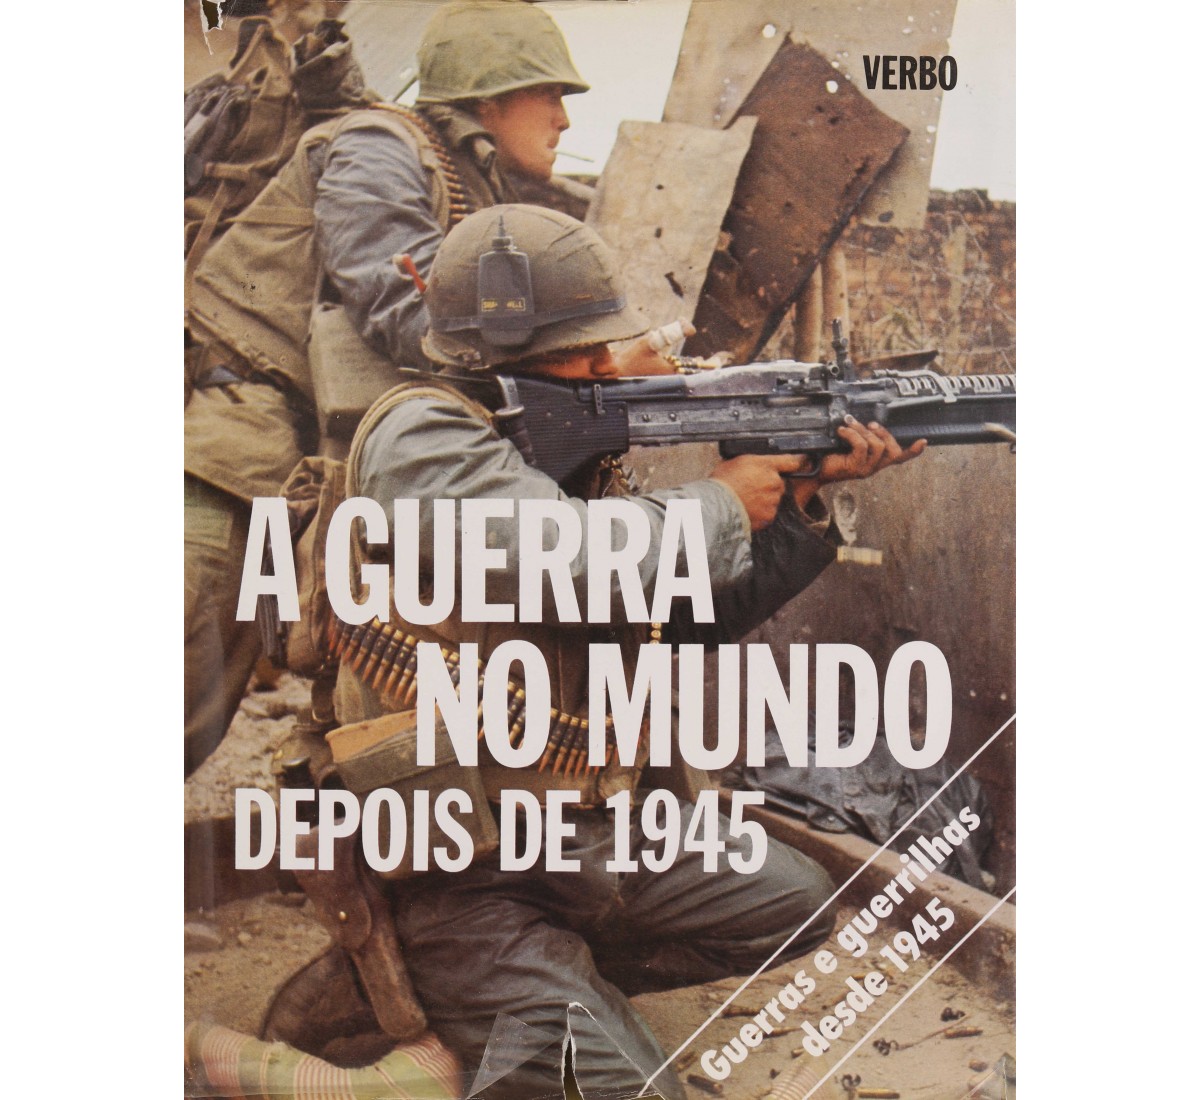 A GUERRA NO MUNDO DEPOIS DE 1945